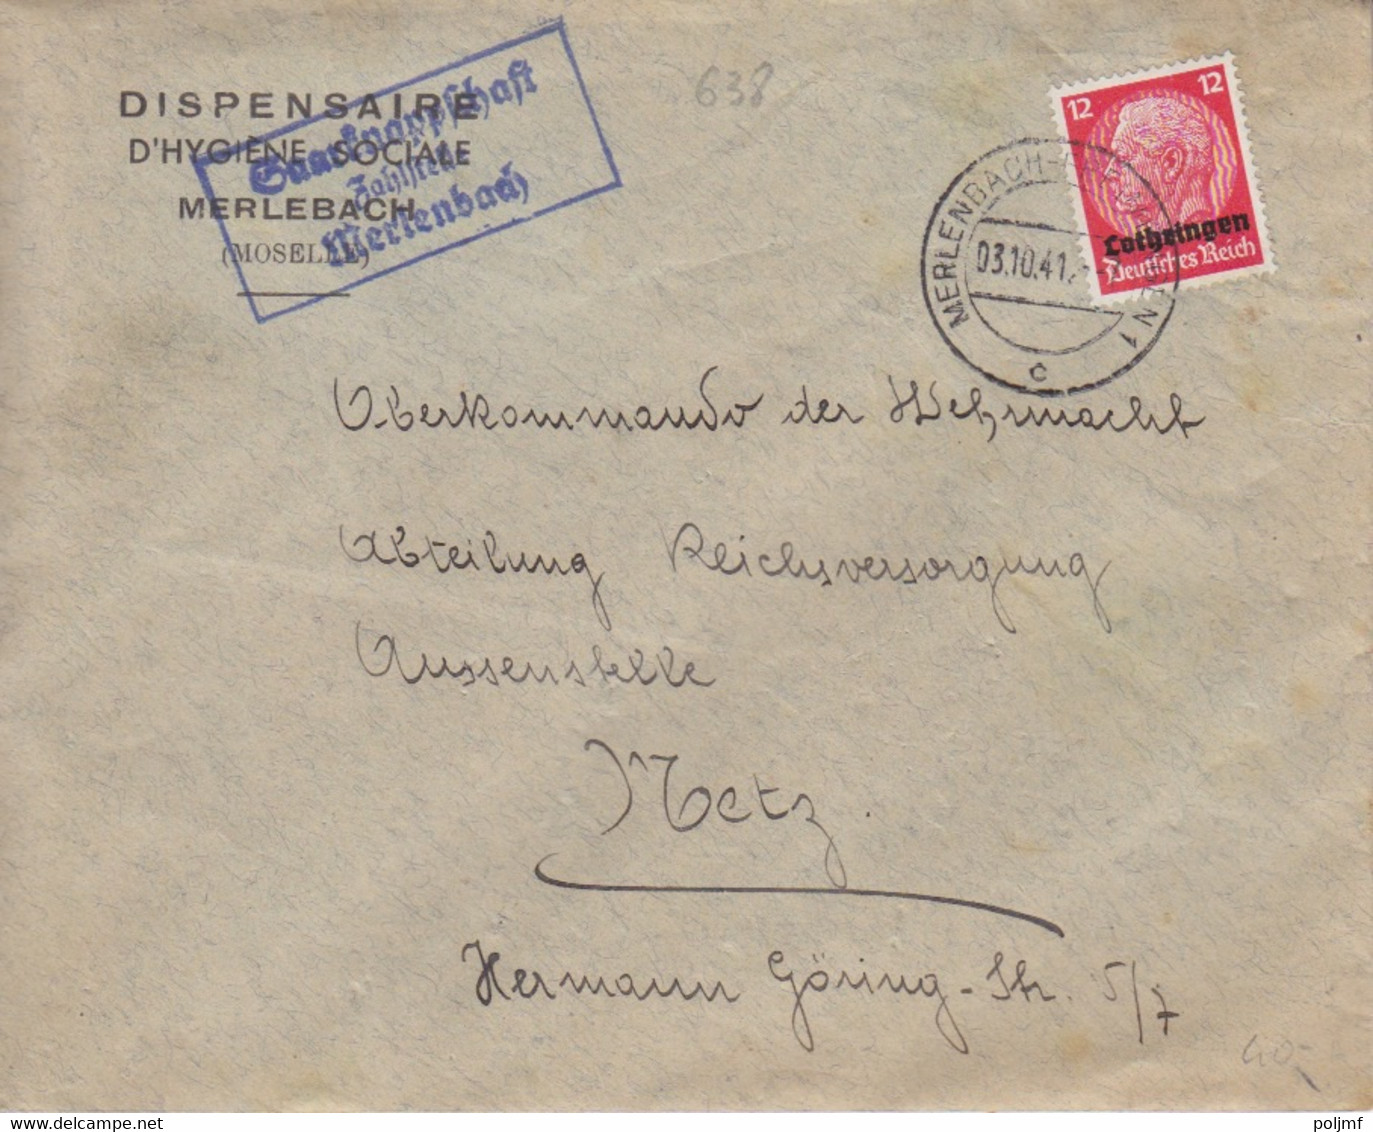 Lettre à Entête (Dispensaire...) De Merlebach (T325 Merlenbach-Freimingen 1 C) TP Lothr. 12pf Le 3/10/41 + Tampon Saarkn - Covers & Documents